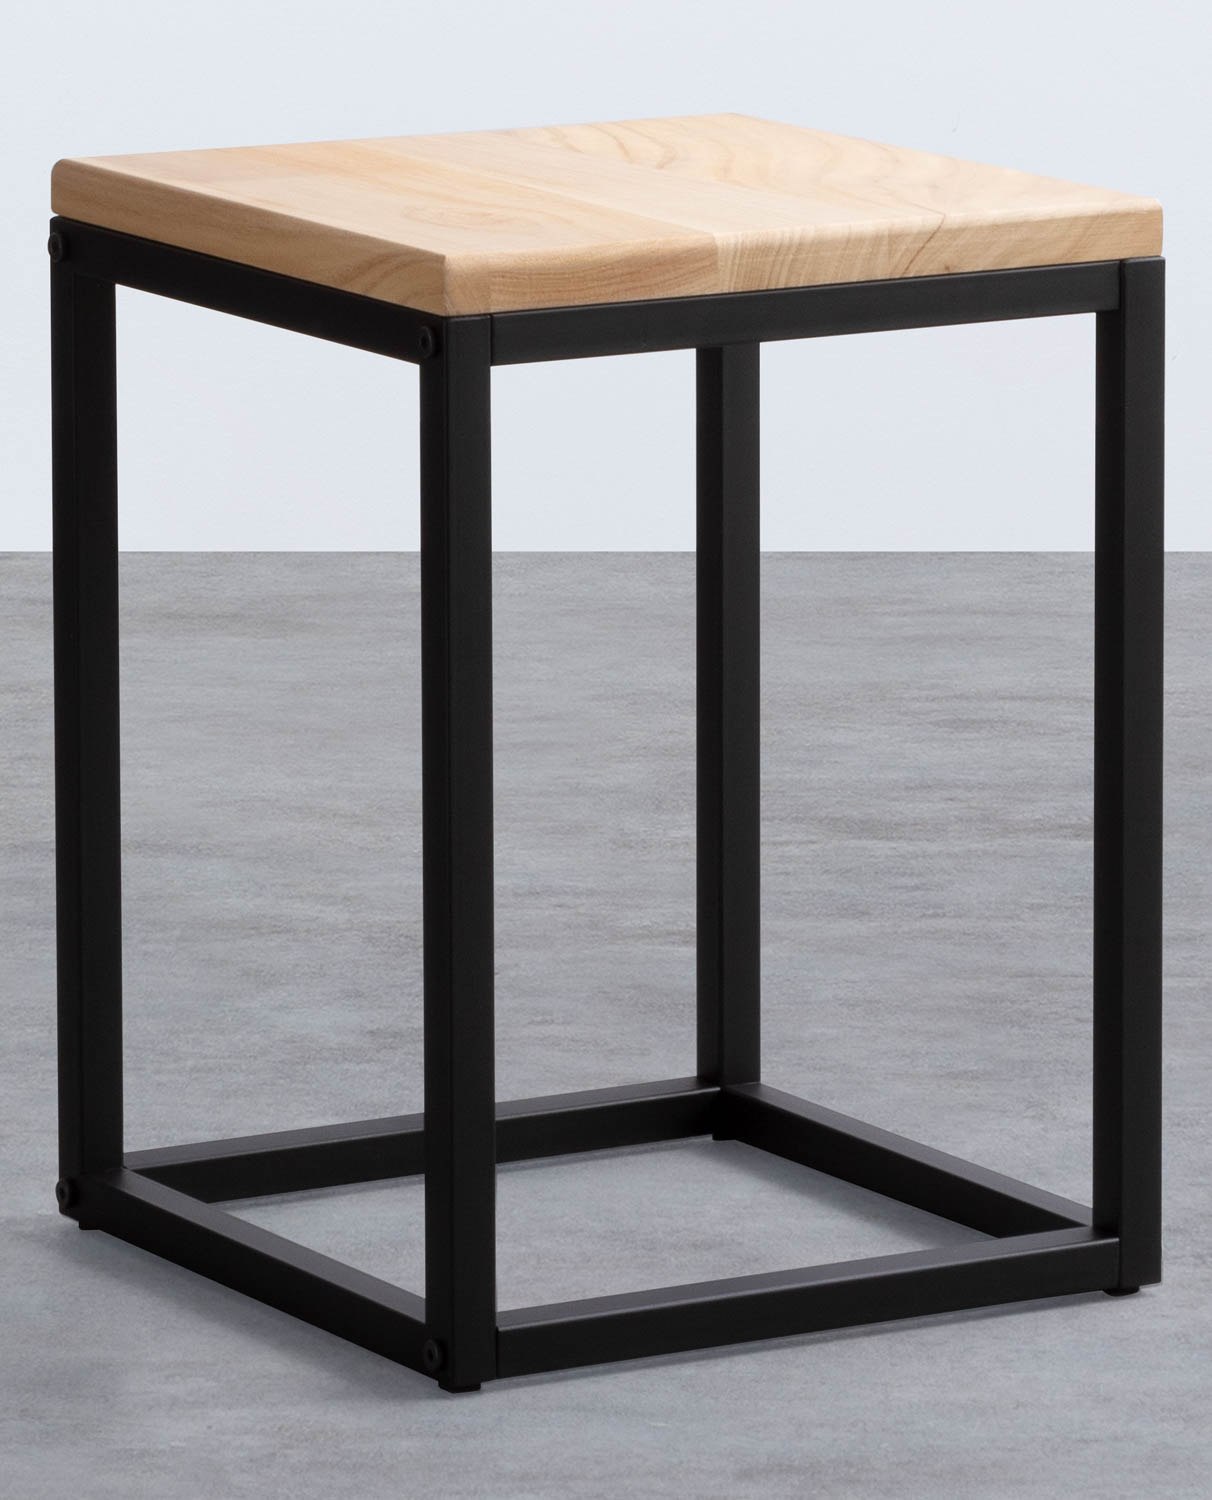 Tavolo Ausiliario Quadrato in Legno e Metallo (30x30 cm) Ferro Basso, immagine della galleria 1